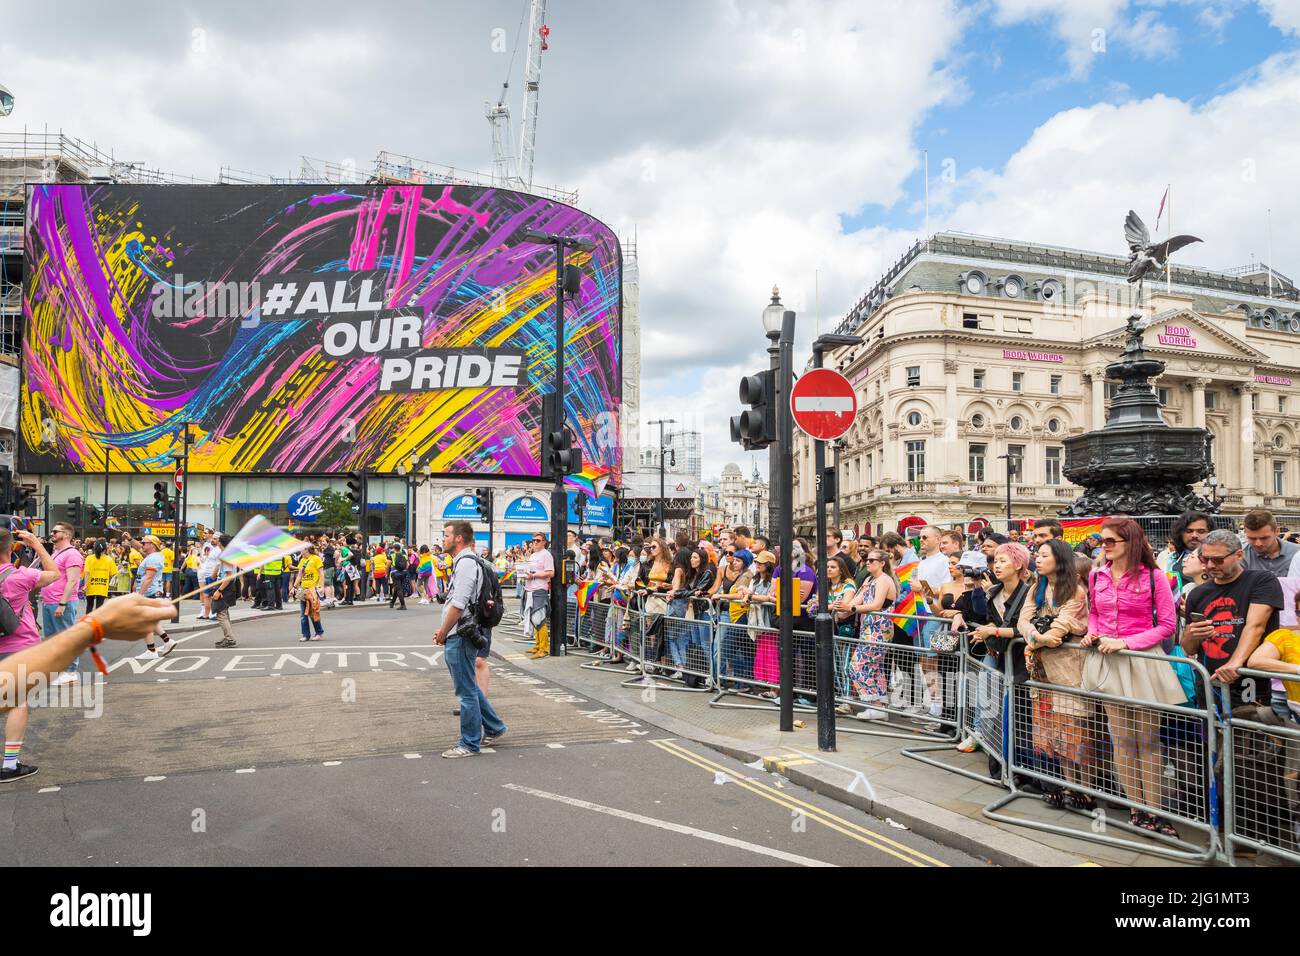 Vista de Piccadilly Circus Lights con el logotipo Pride in London 2022 Foto de stock